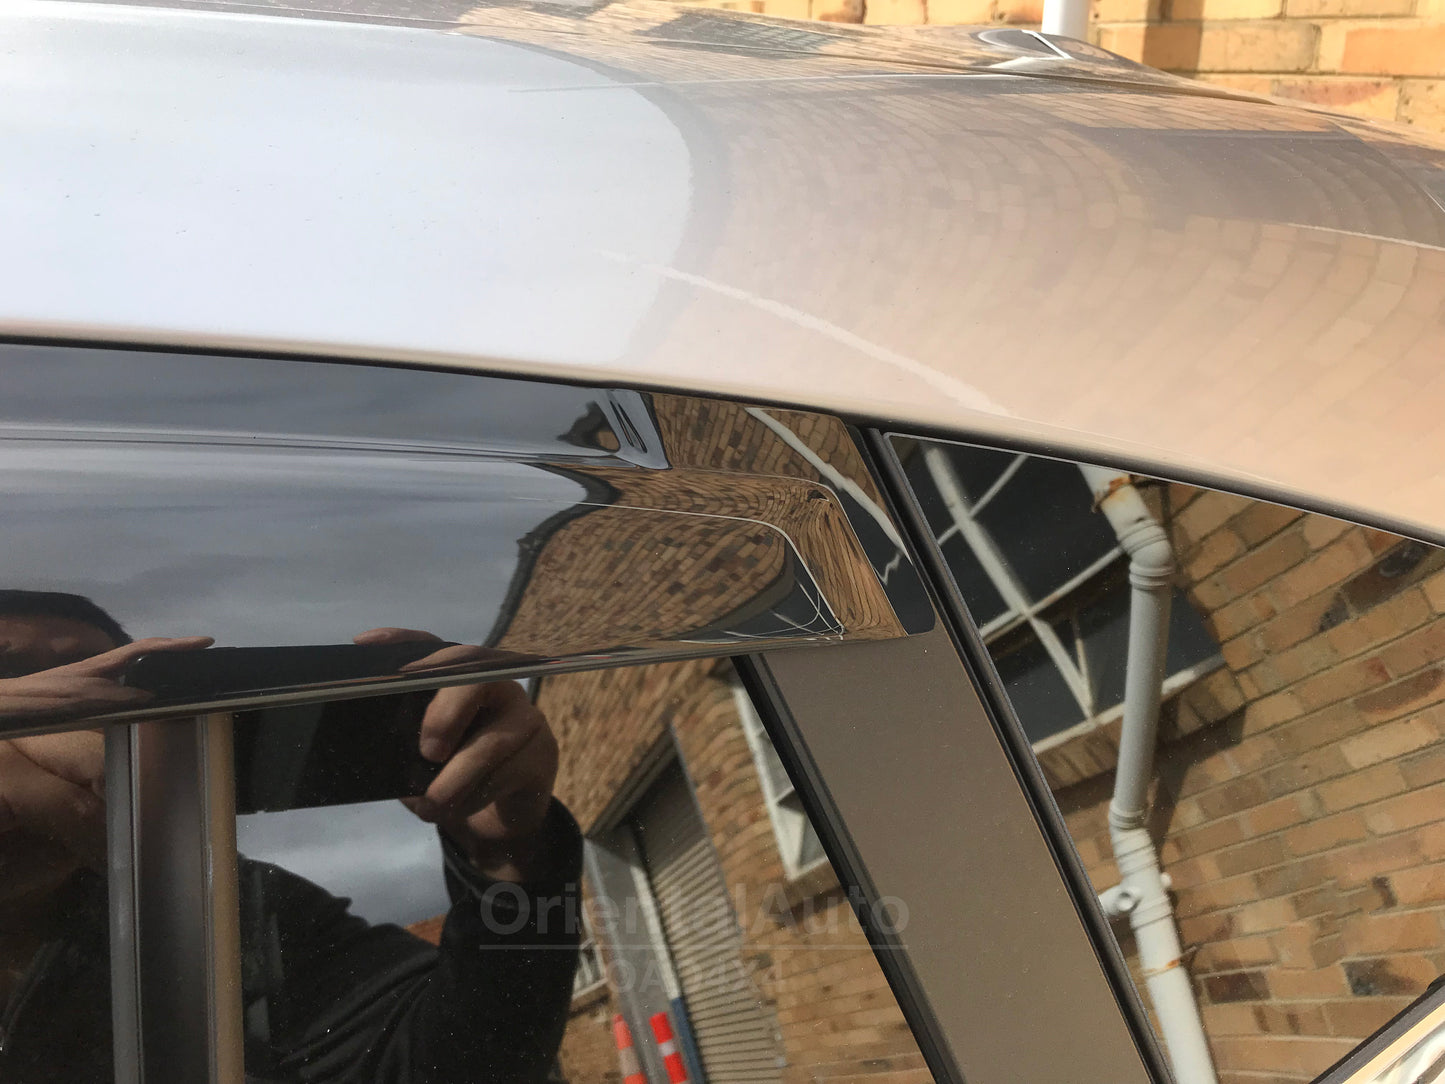 Luxury Weathershields Weather Shields Window Visor for Subaru Impreza G5 Series 5D Hatch 2016-2022